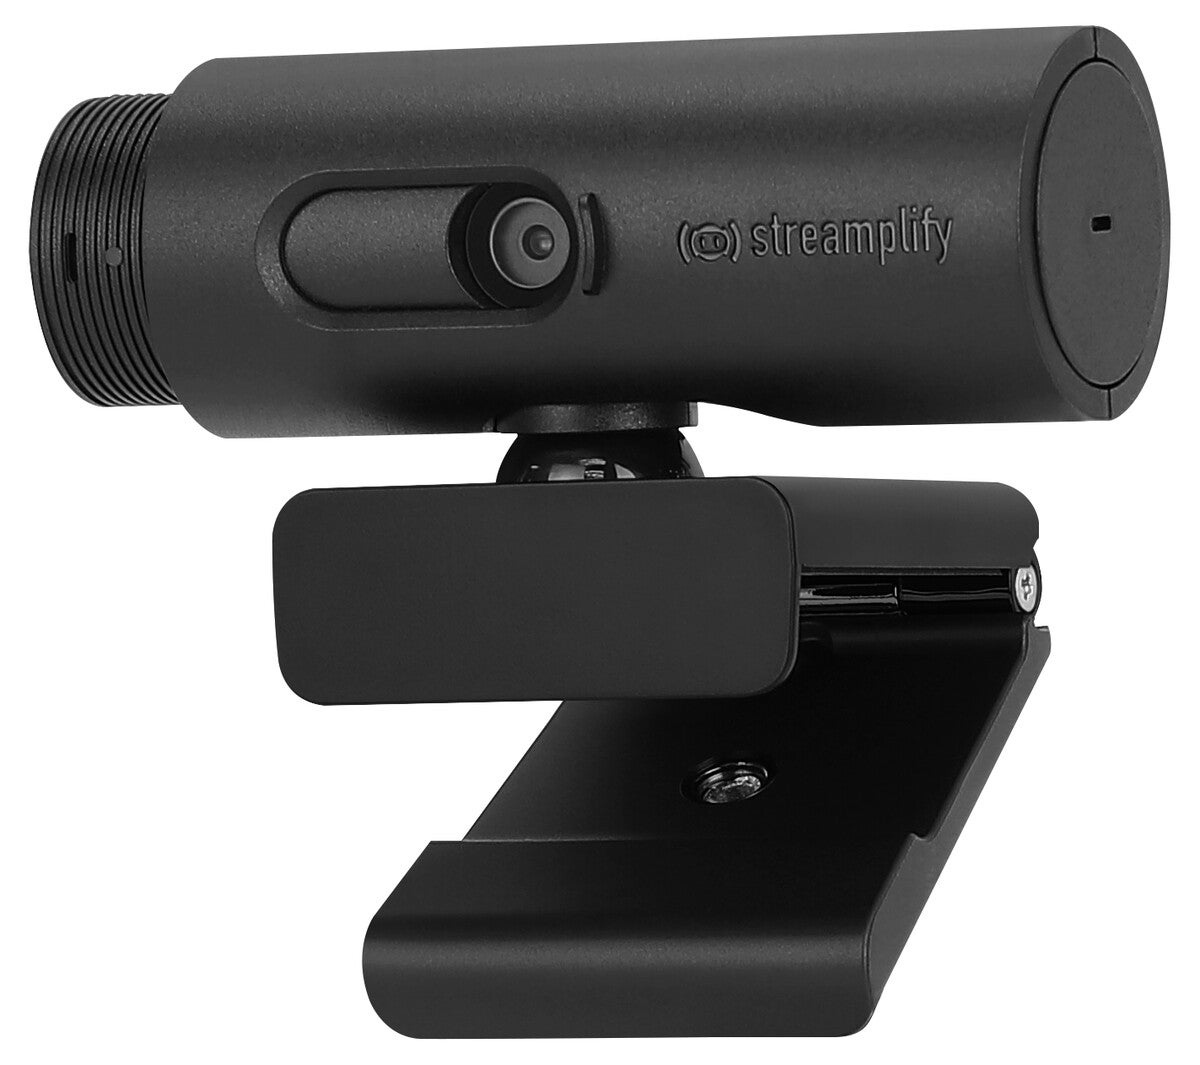 Streamplify Cam Full HD-webkamera for strømming